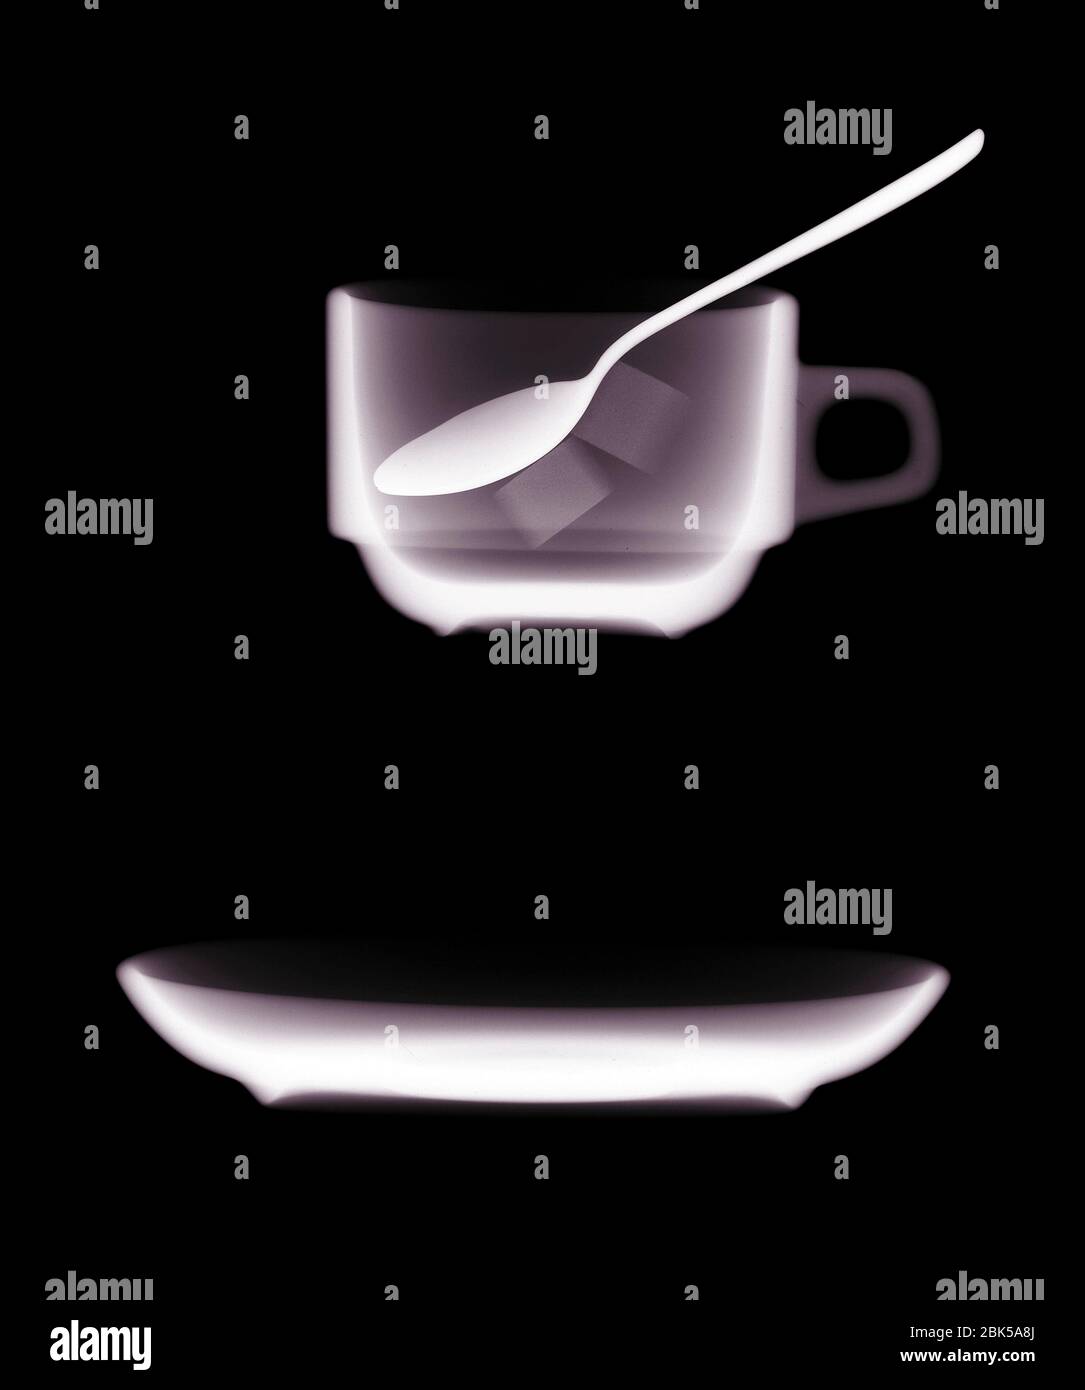 Platillo de teacup y cucharadita, rayos X. Foto de stock